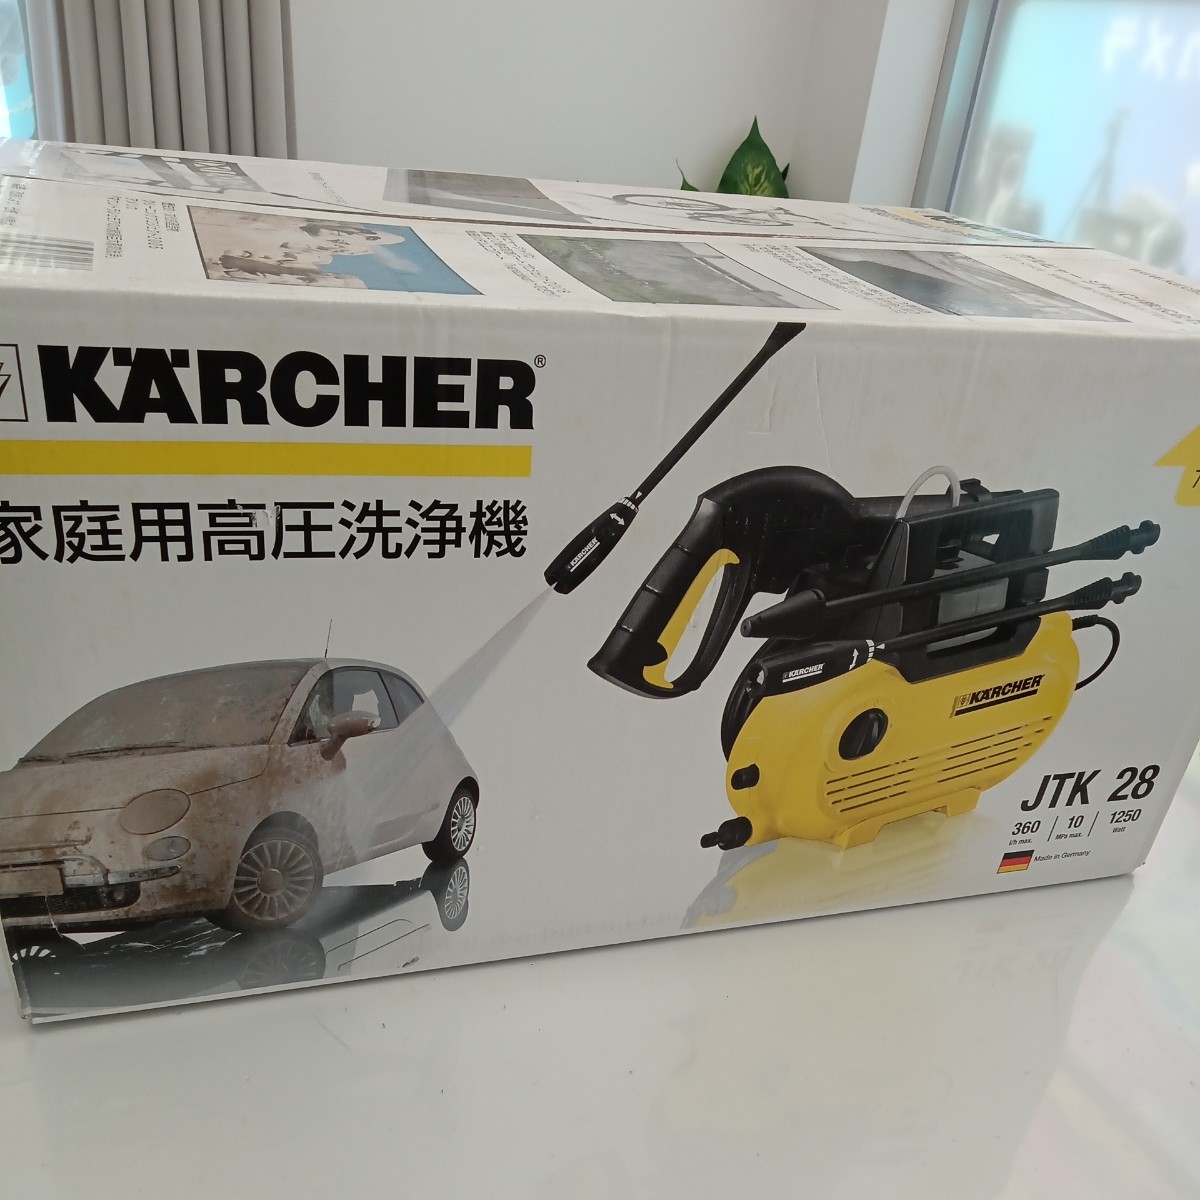 クリアランス割引品 KARCHER ケルヒャー 家庭用高圧洗浄機 JTK28